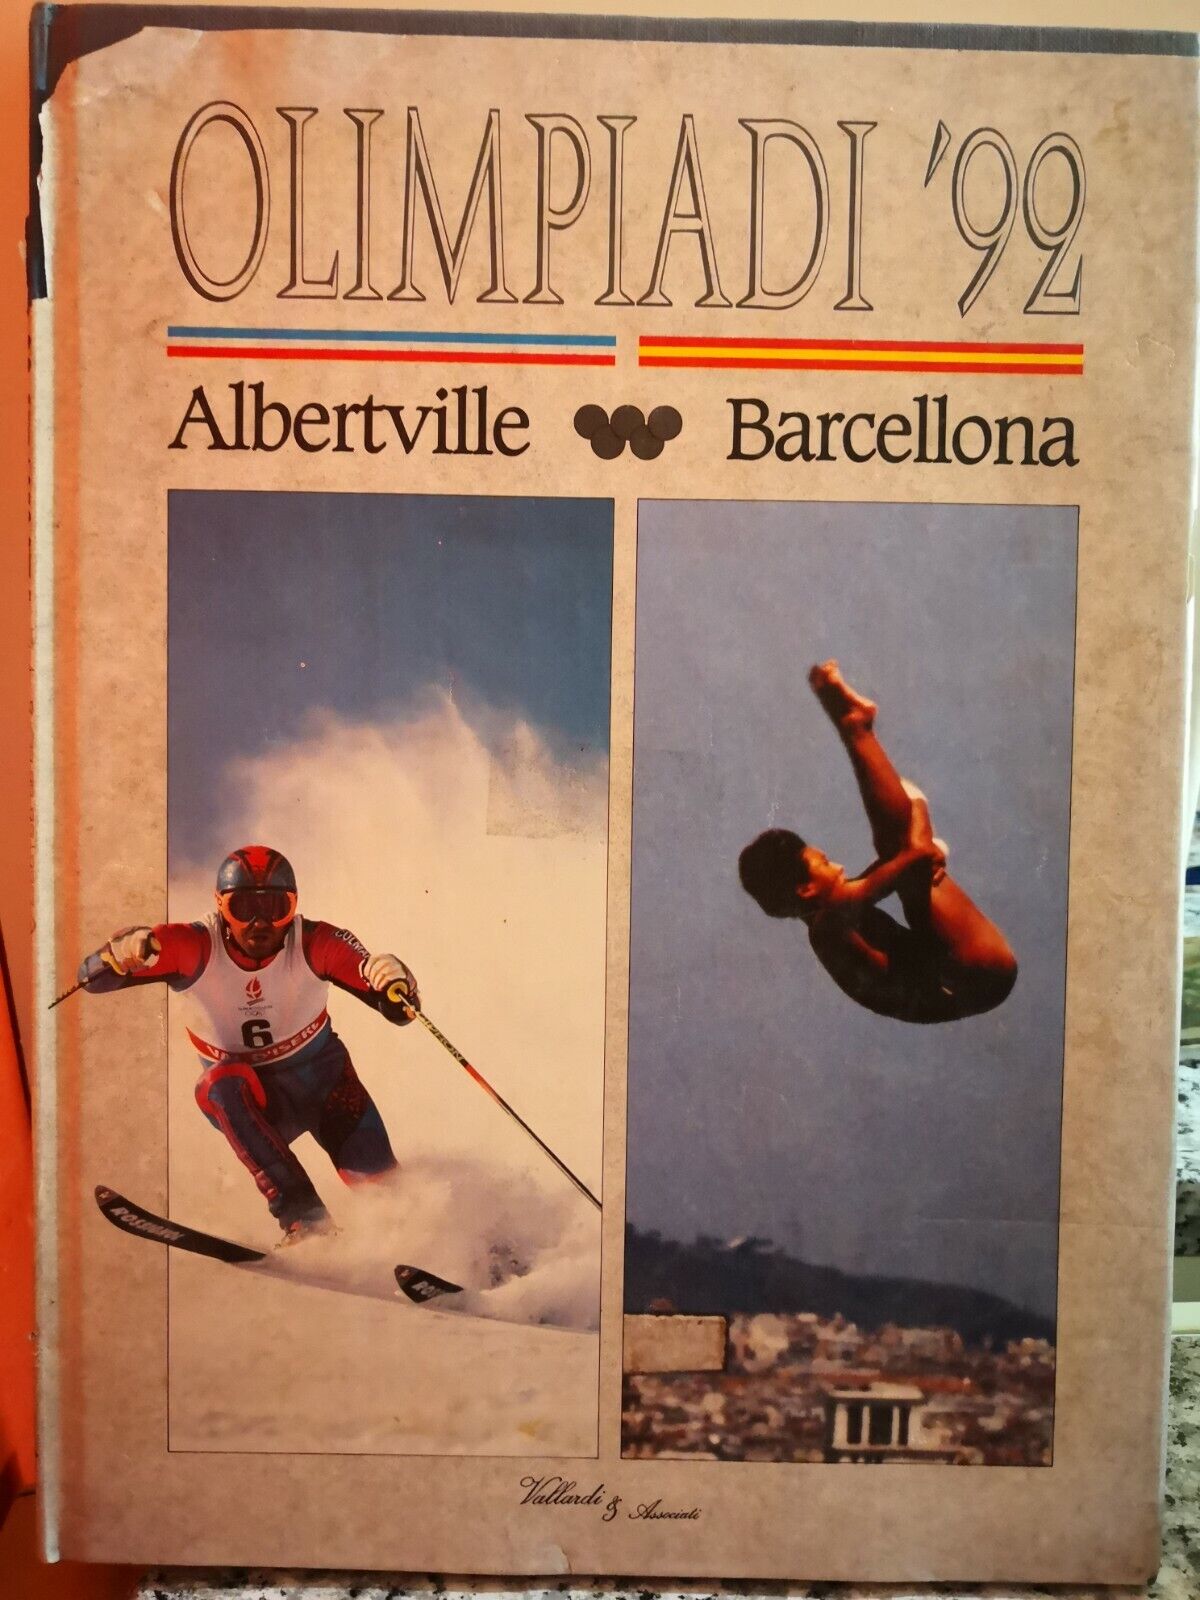 Olimpiadi? 92 ( Albertville Barcellona) di A.a.v.v,  1992,  Assitalia-F